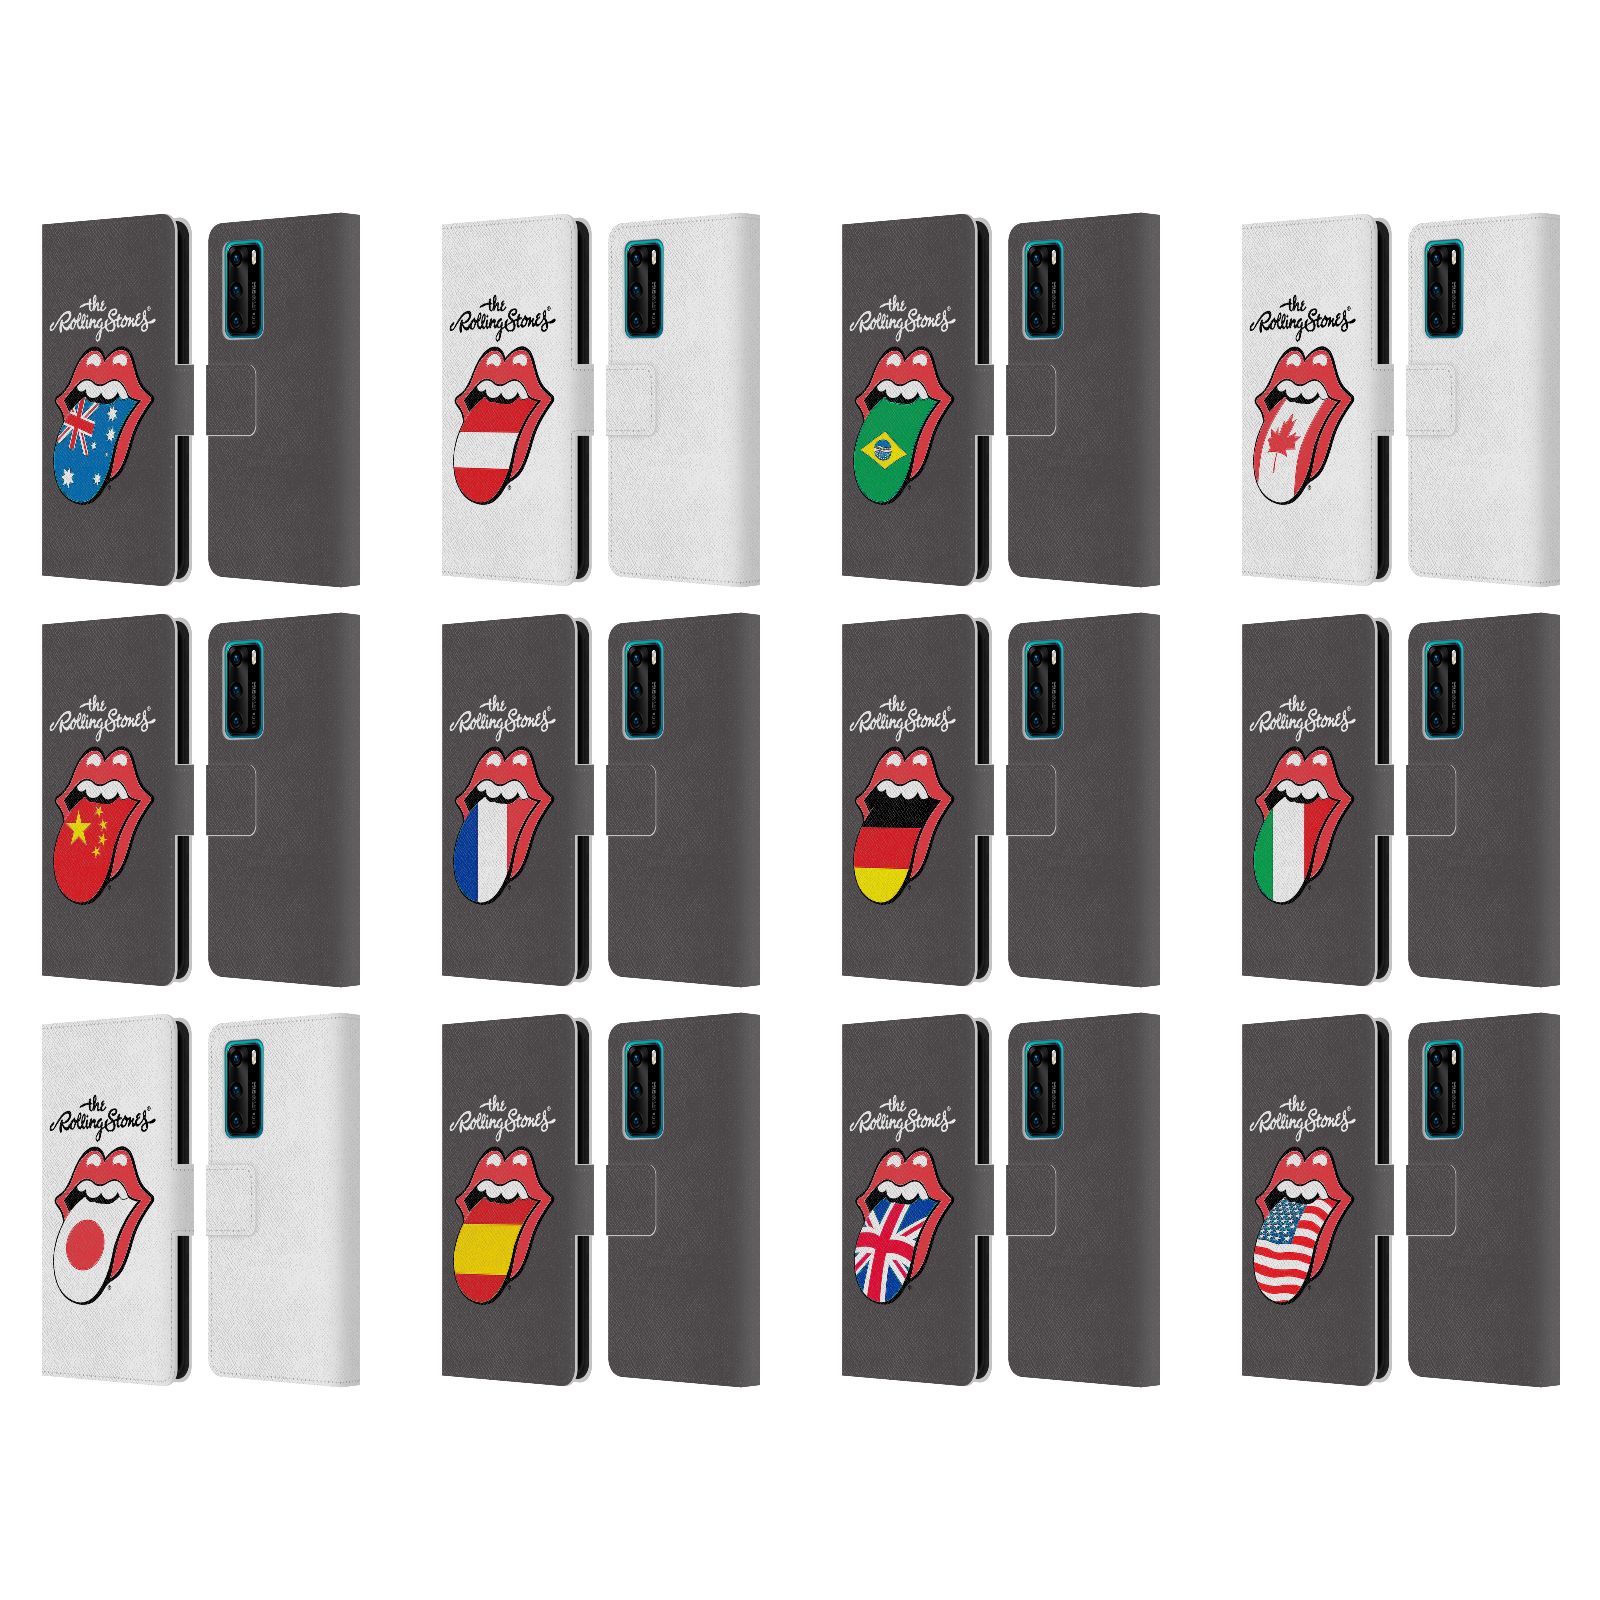 公式ライセンス The Rolling Stones インターナショナル・リックス1 レザー手帳型ウォレットタイプケース Huawei 電話 4 ザ・ローリング・ストーンズ ローリング・ストーンズ ベロ・マーク グッズ